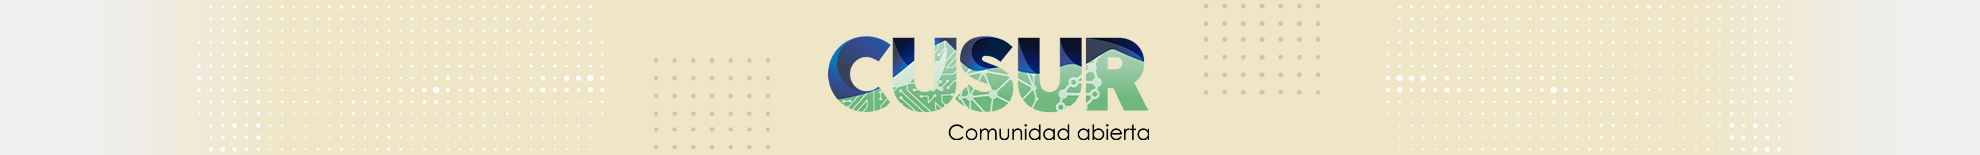 Imagen nuevo logotipo del Centro Universitario del Sur